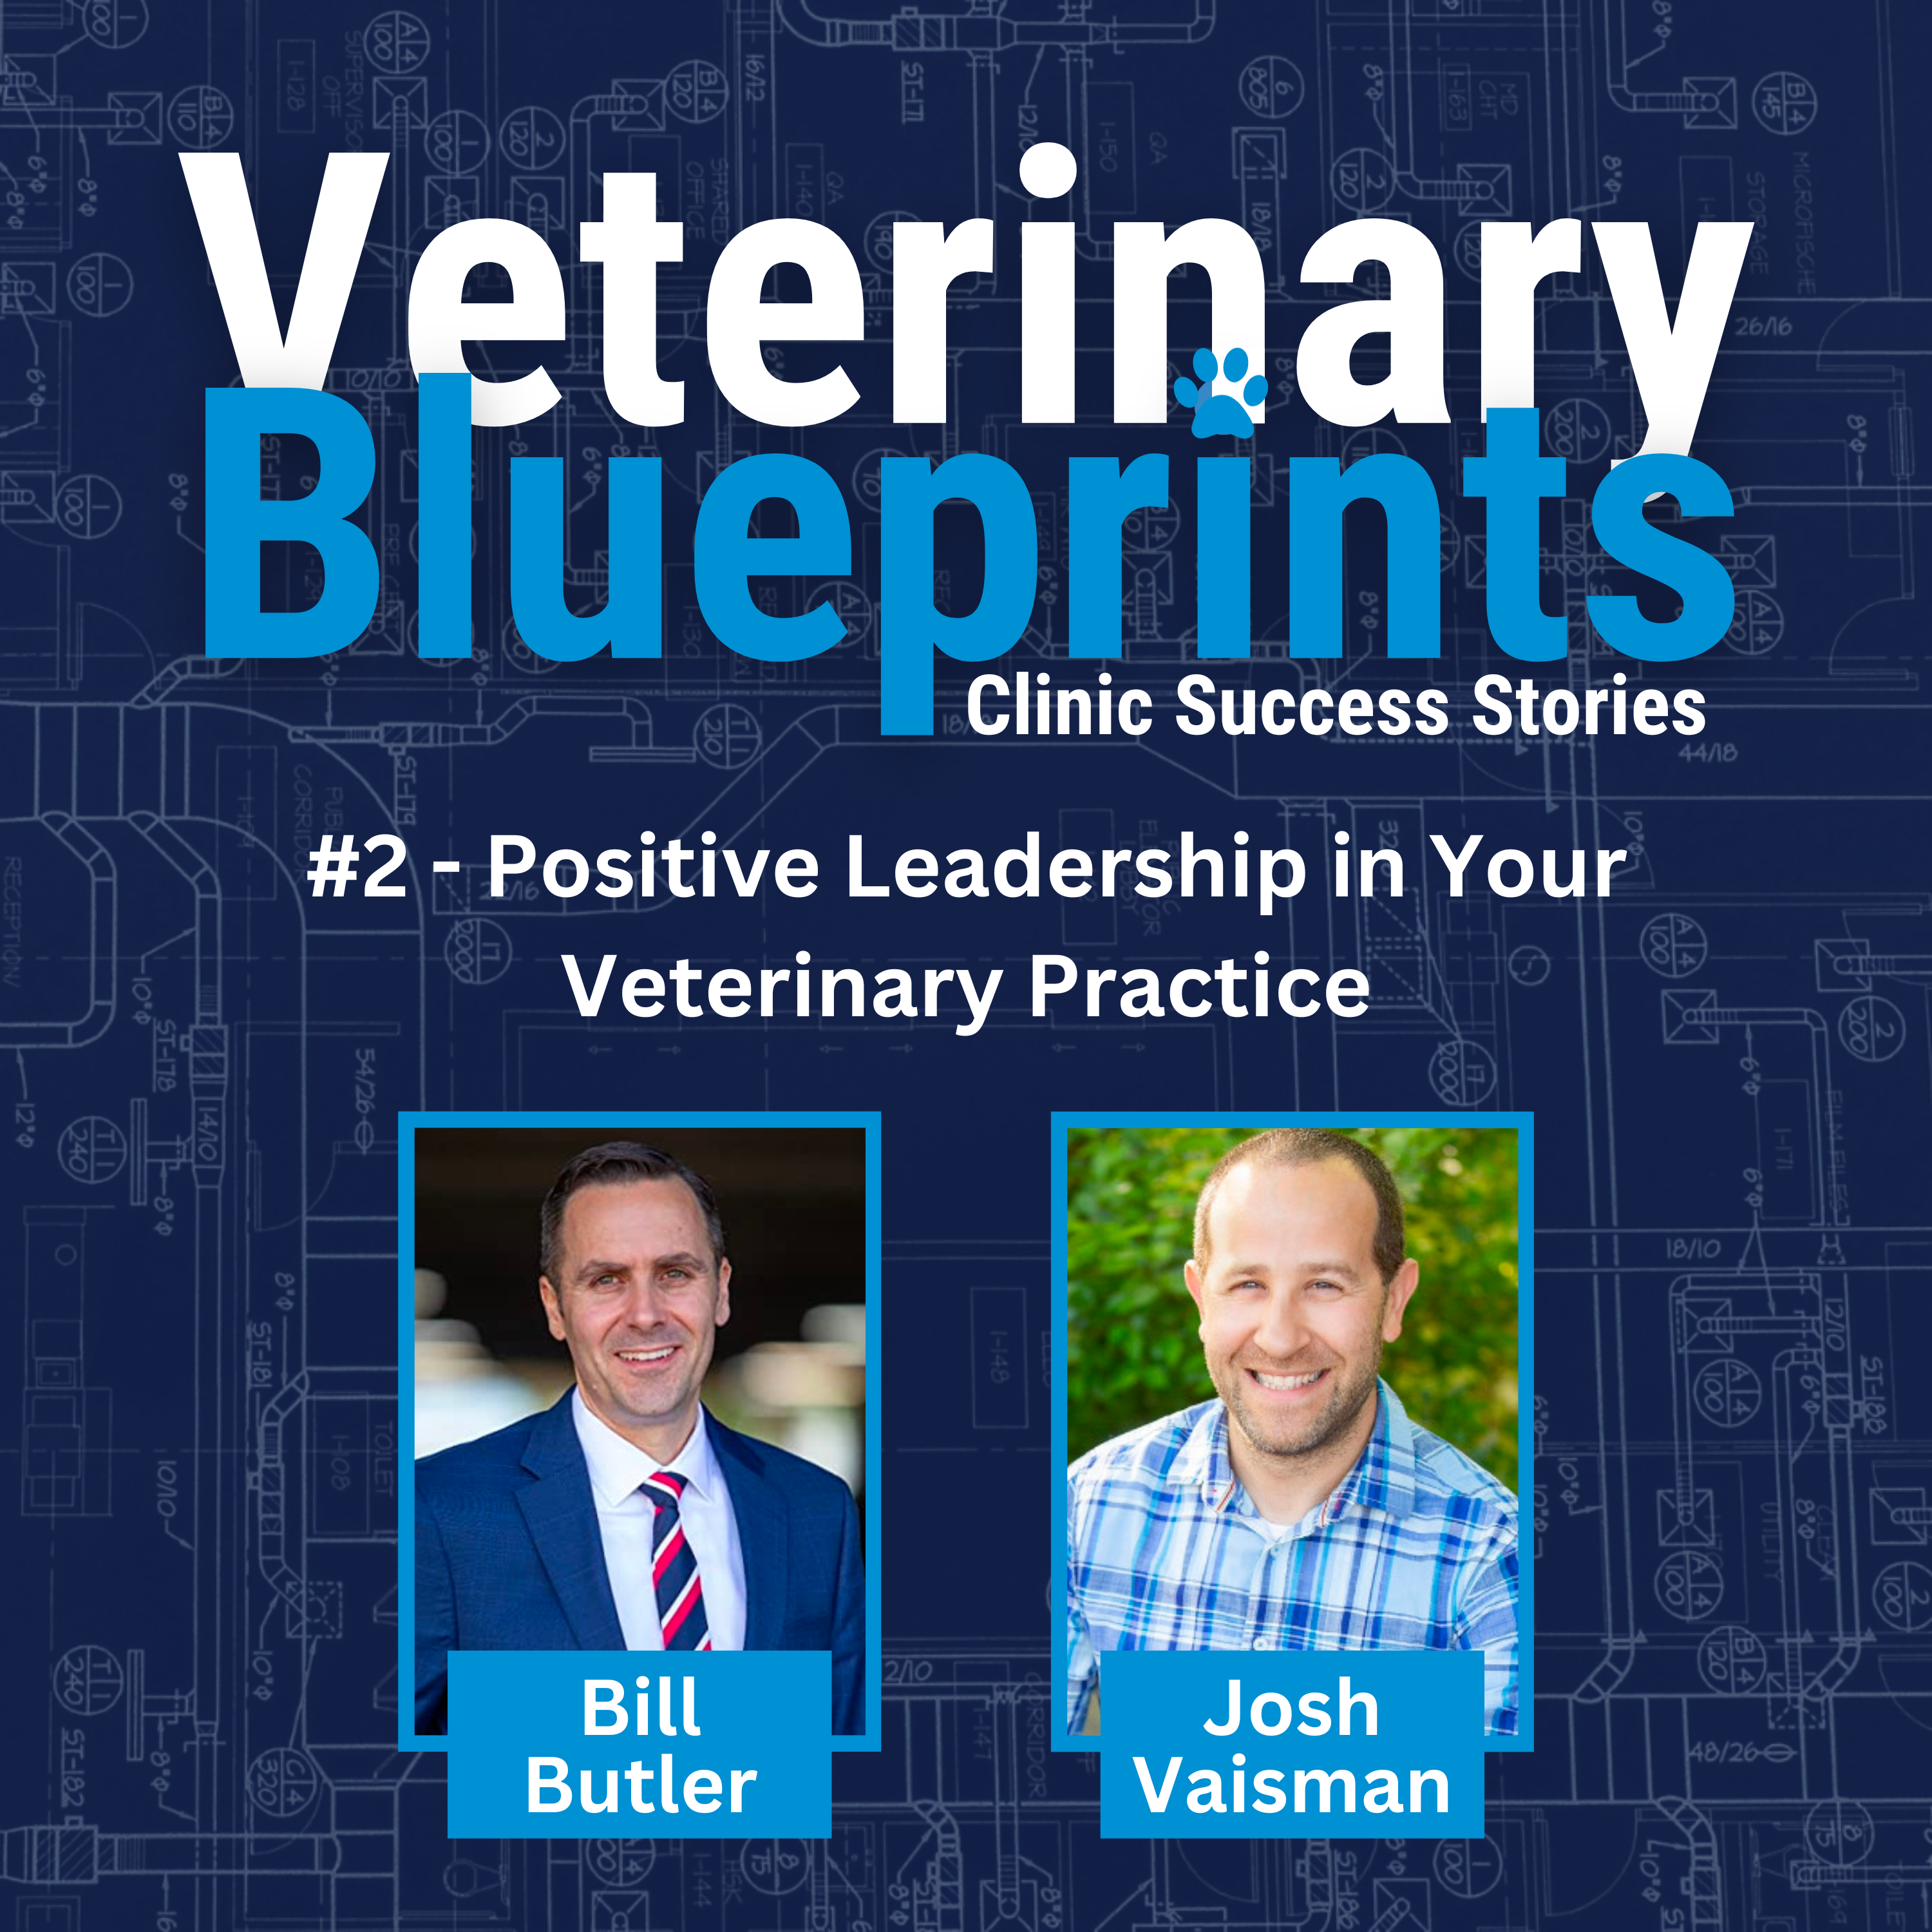 Practice Leadership in Your Veterinary Practice